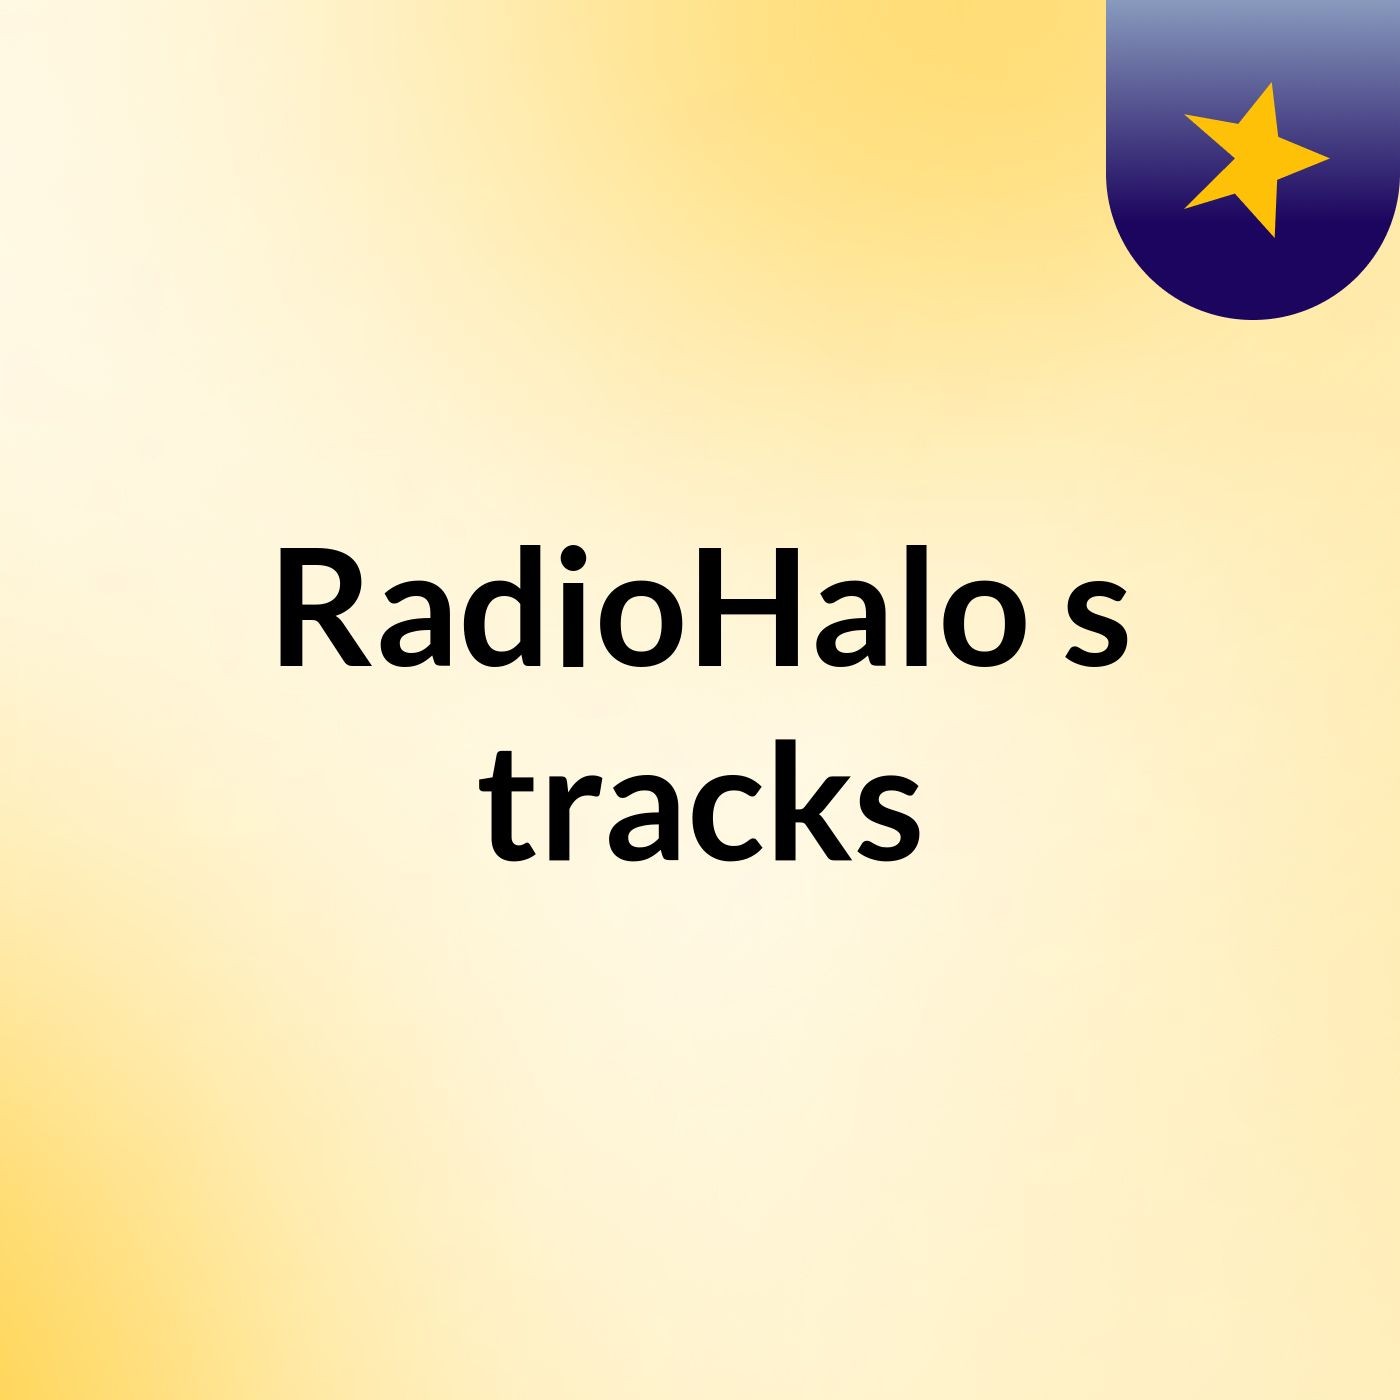 RadioHalo's tracks